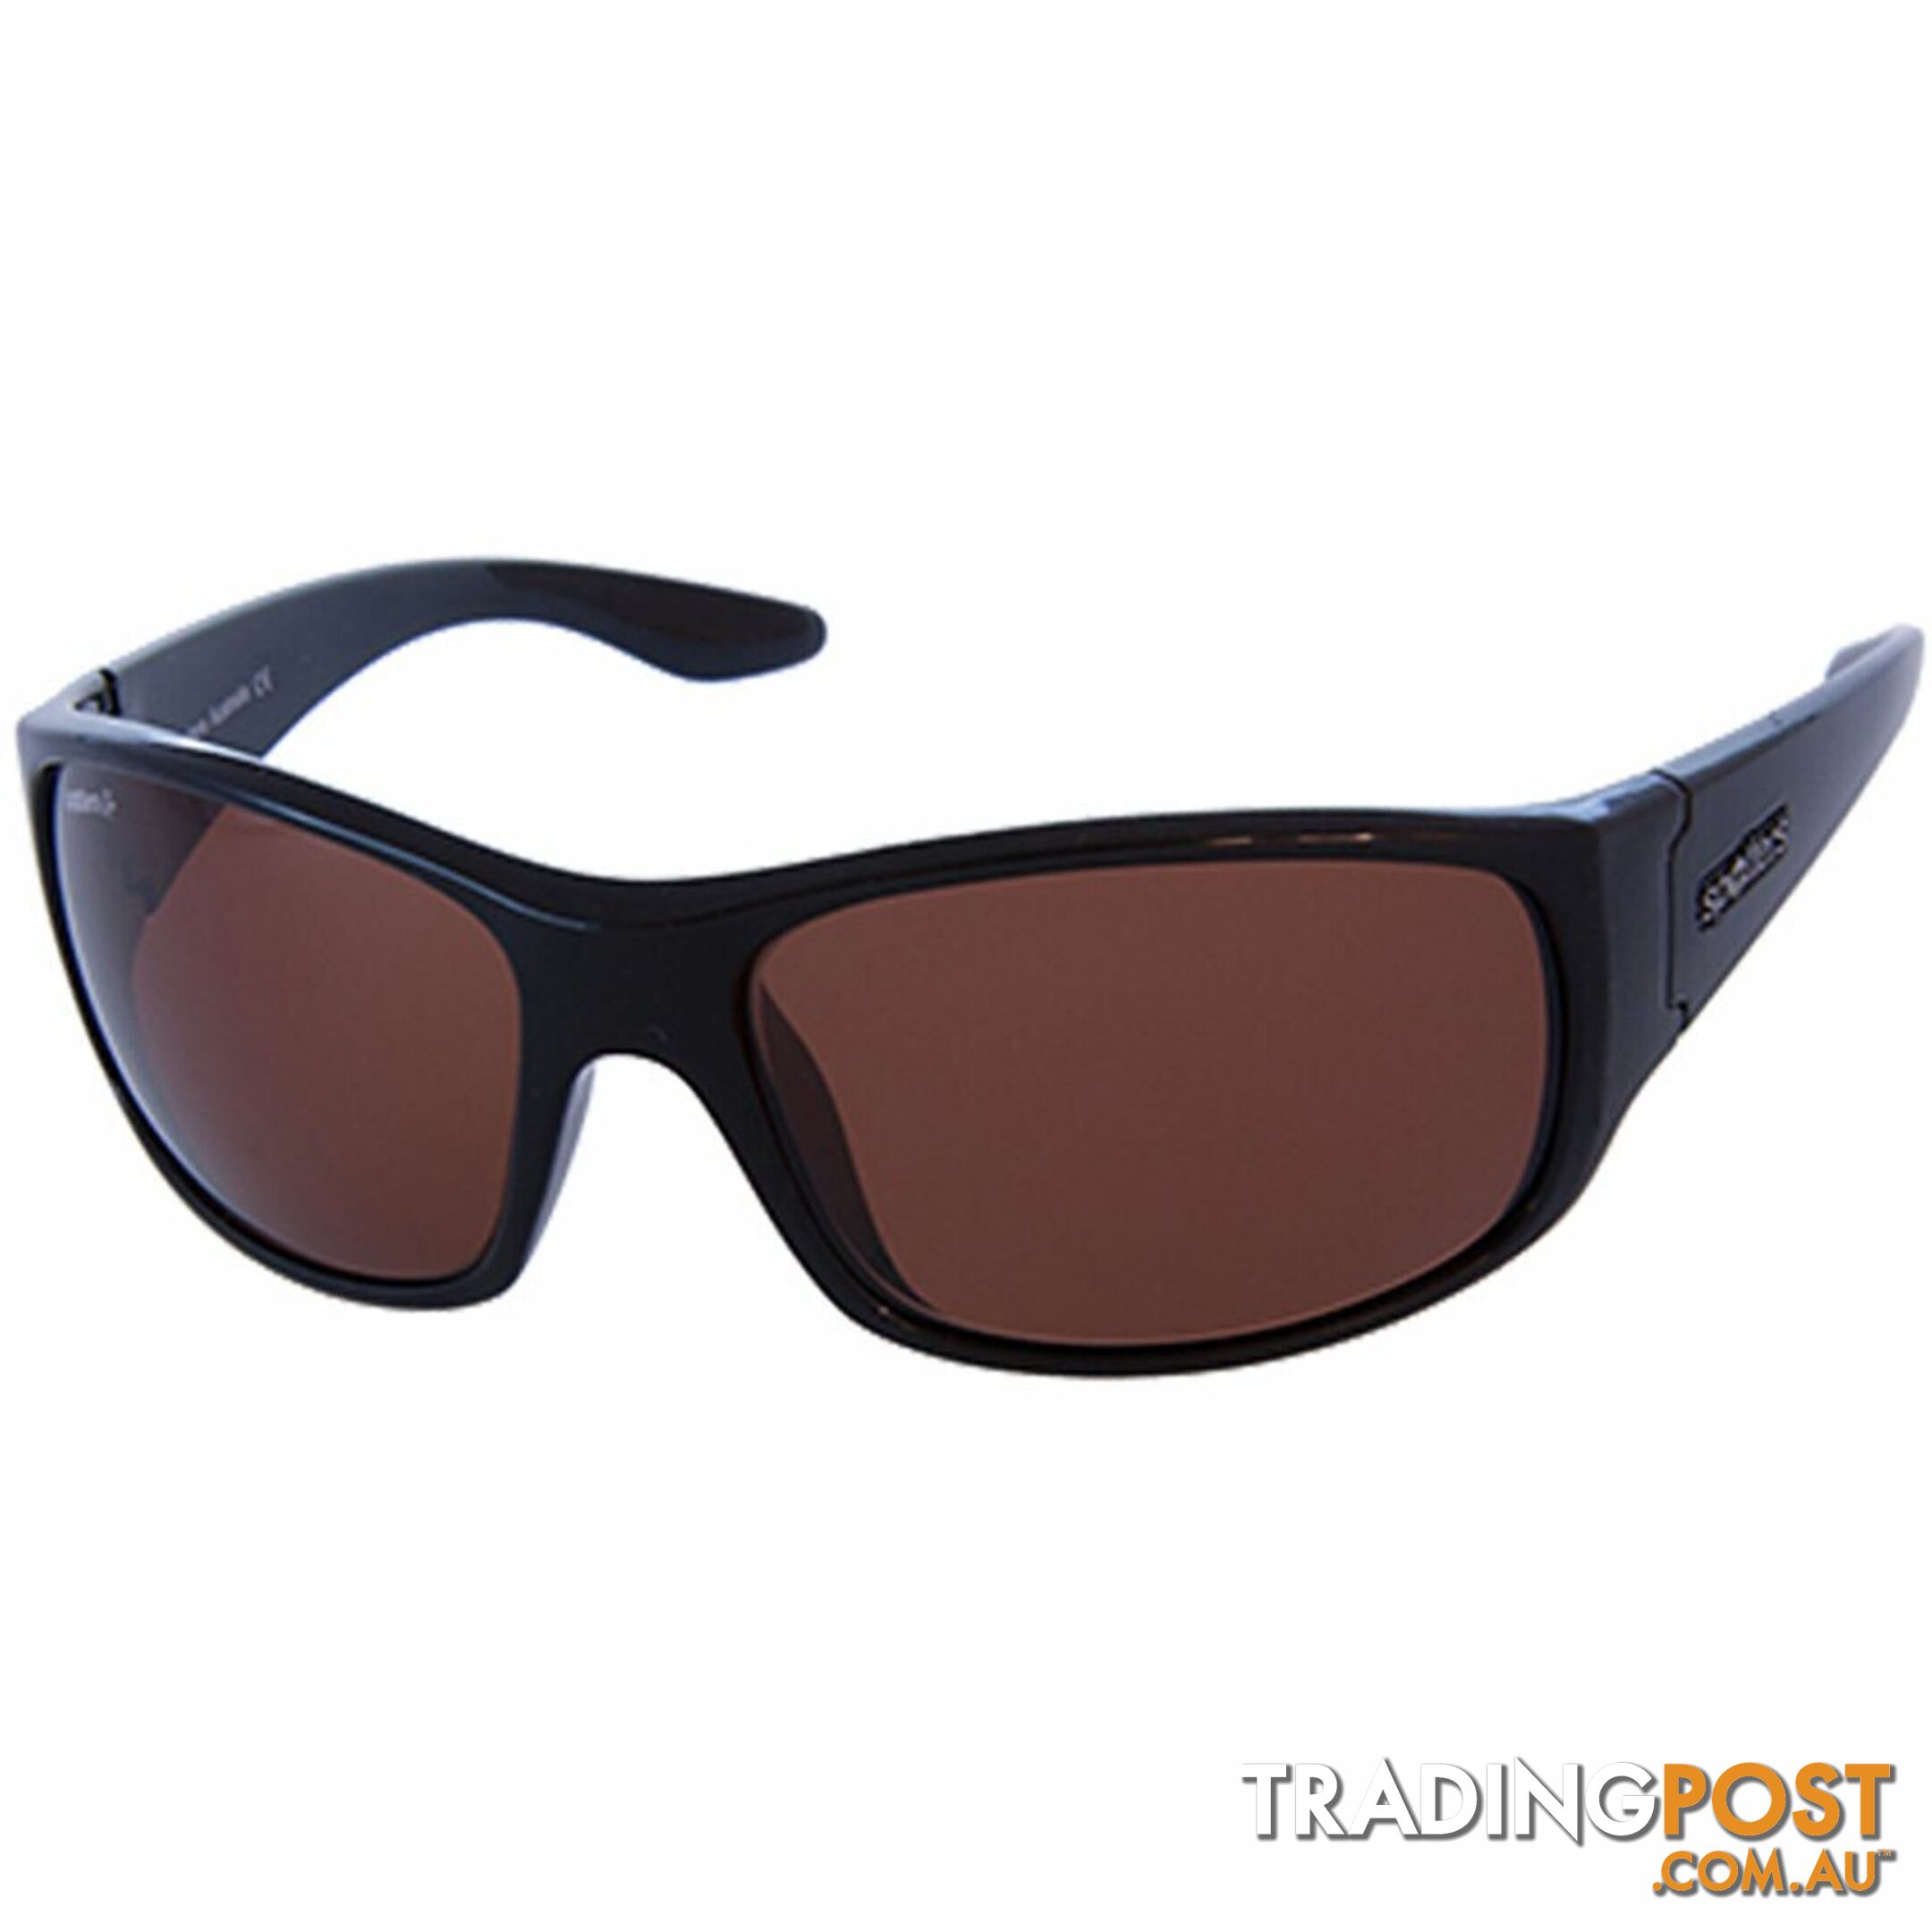 Spotters Cruiz Gloss Black Frame Glass Lens - Spotters Cruiz - Spotters Sunglasses